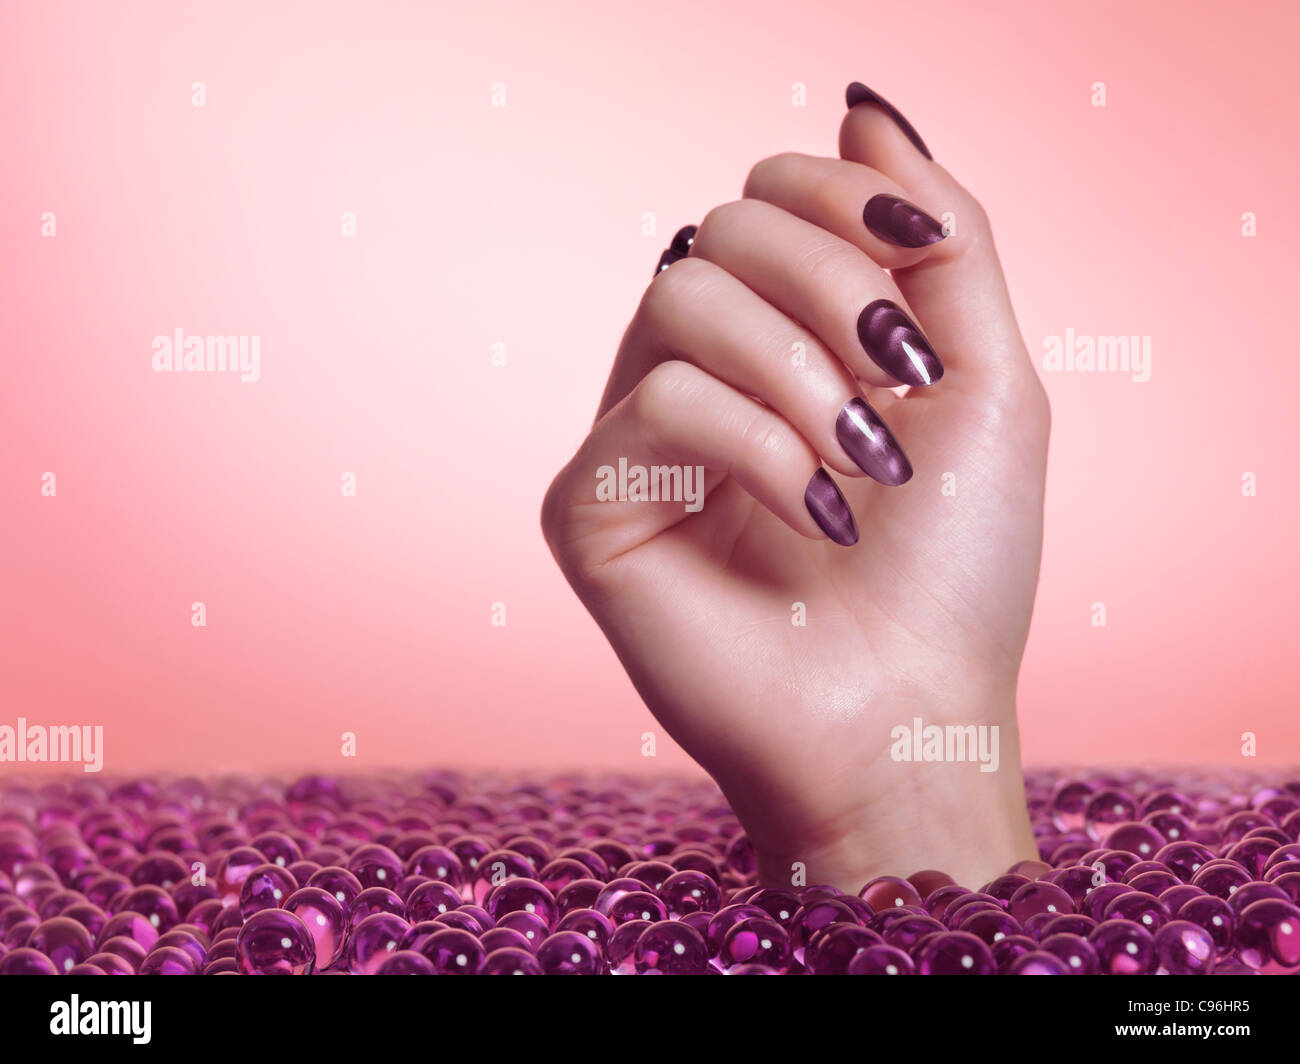 Lizenz erhältlich bei MaximImages.com Frauenhand mit lila nagellack aus einem Meer von Süßigkeiten auf rosa Hintergrund Stockfoto